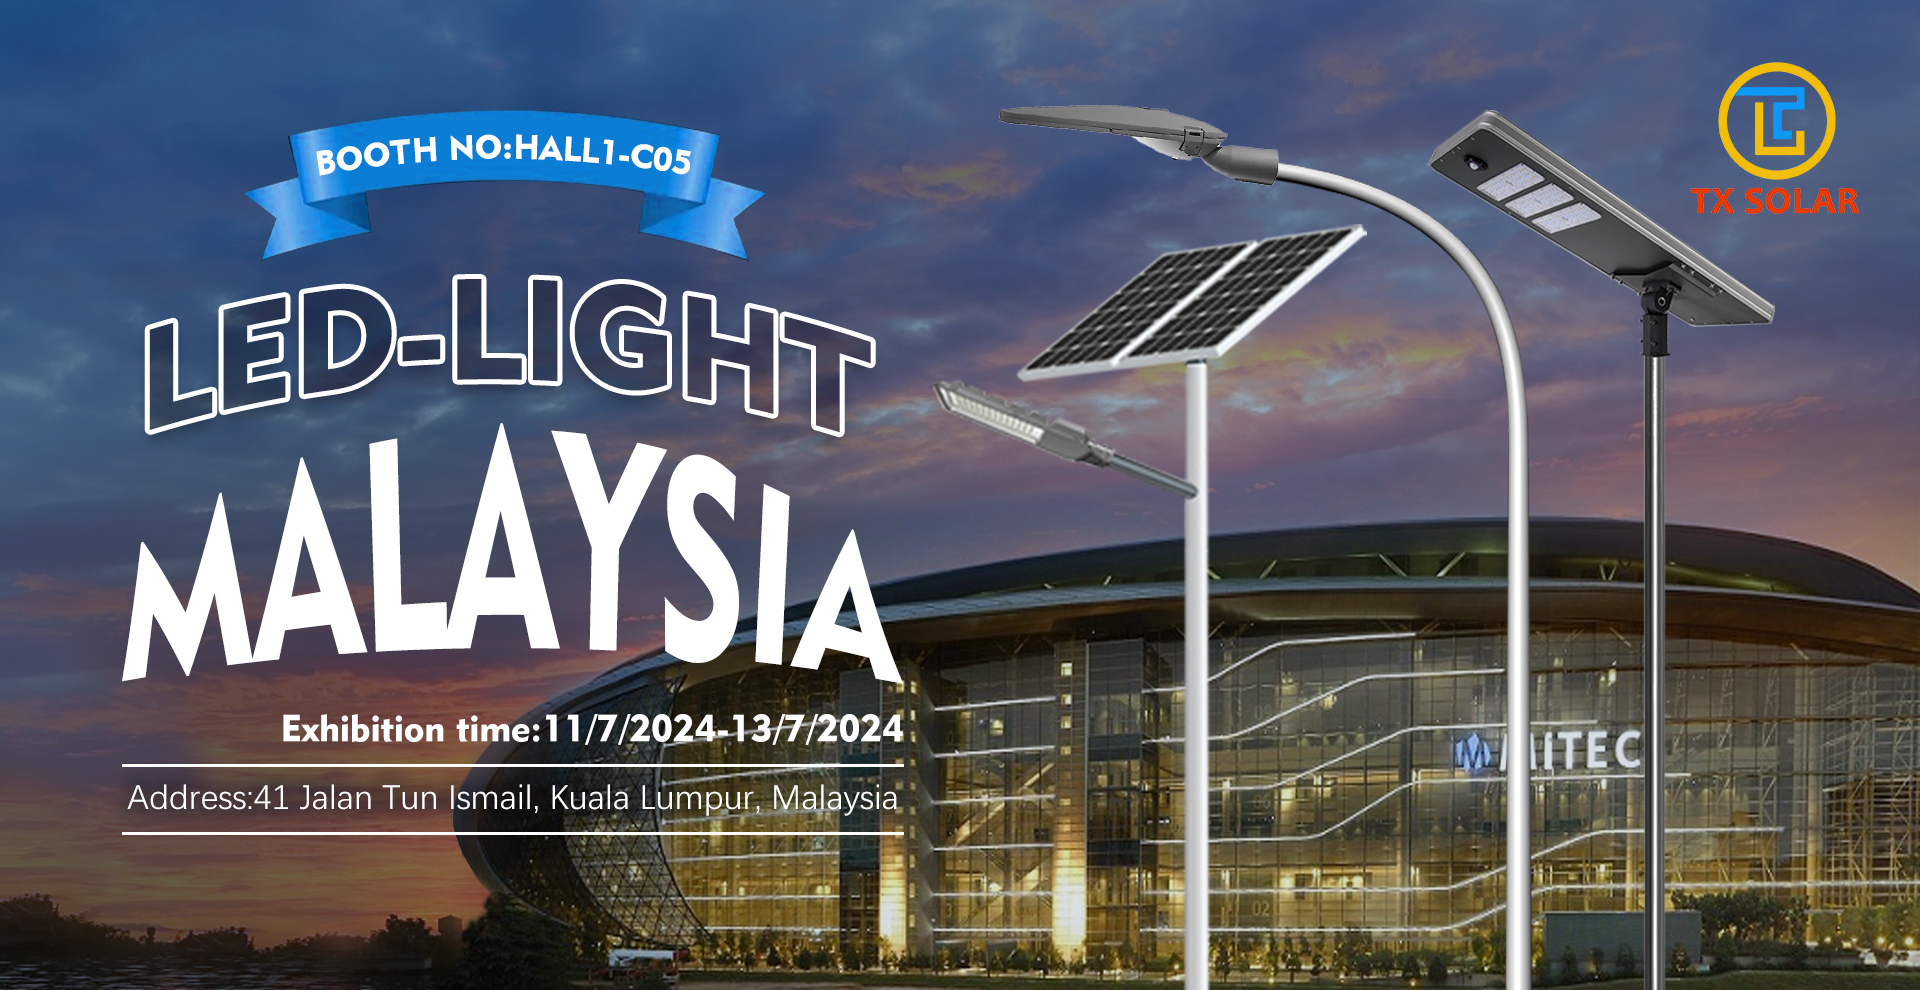 LED-LIGHT Malaysia